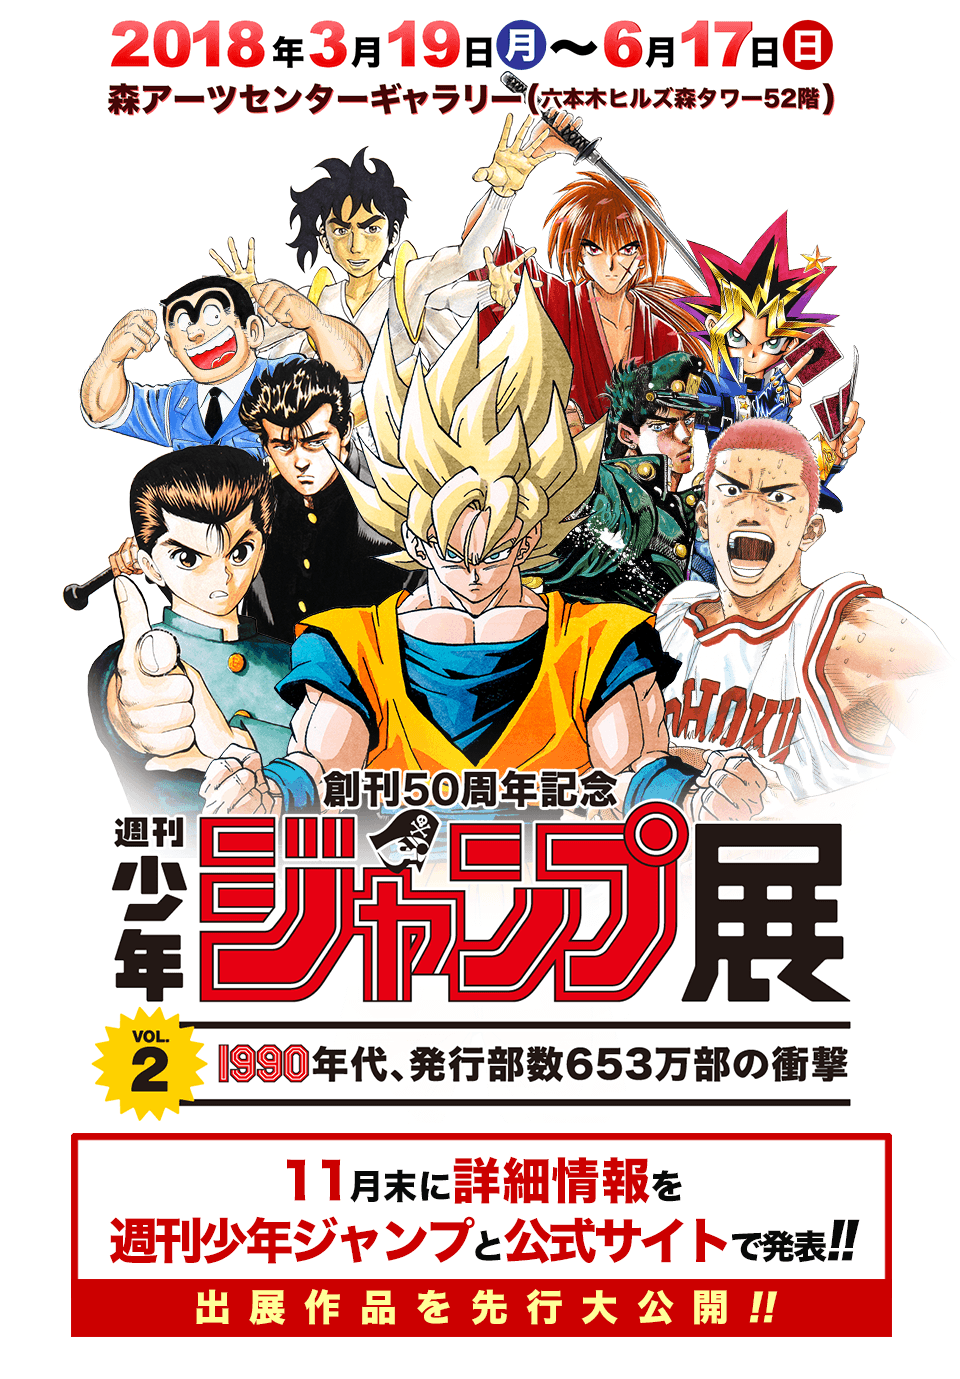 Shonen Jump 50th Anniversary Exhibition Vol 2 Will Come To 18 S Tokyo Japan Web Magazine